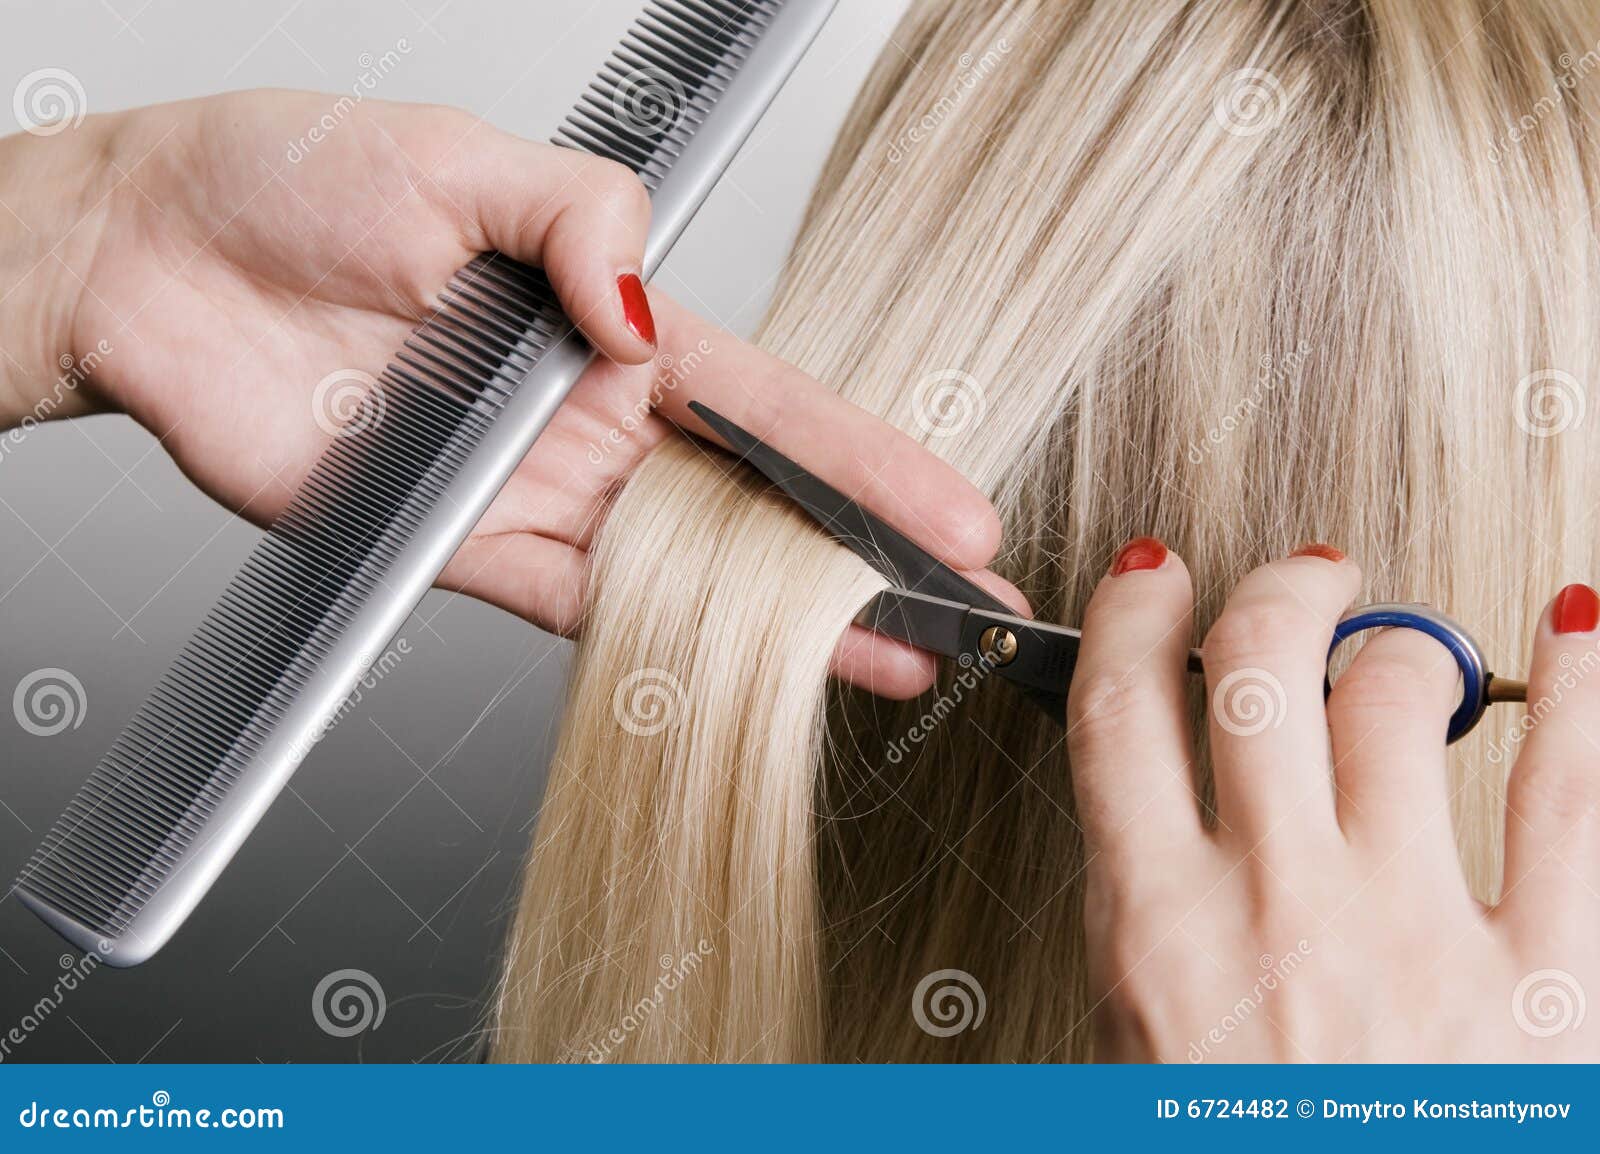 hairdresser cutting blonde hair